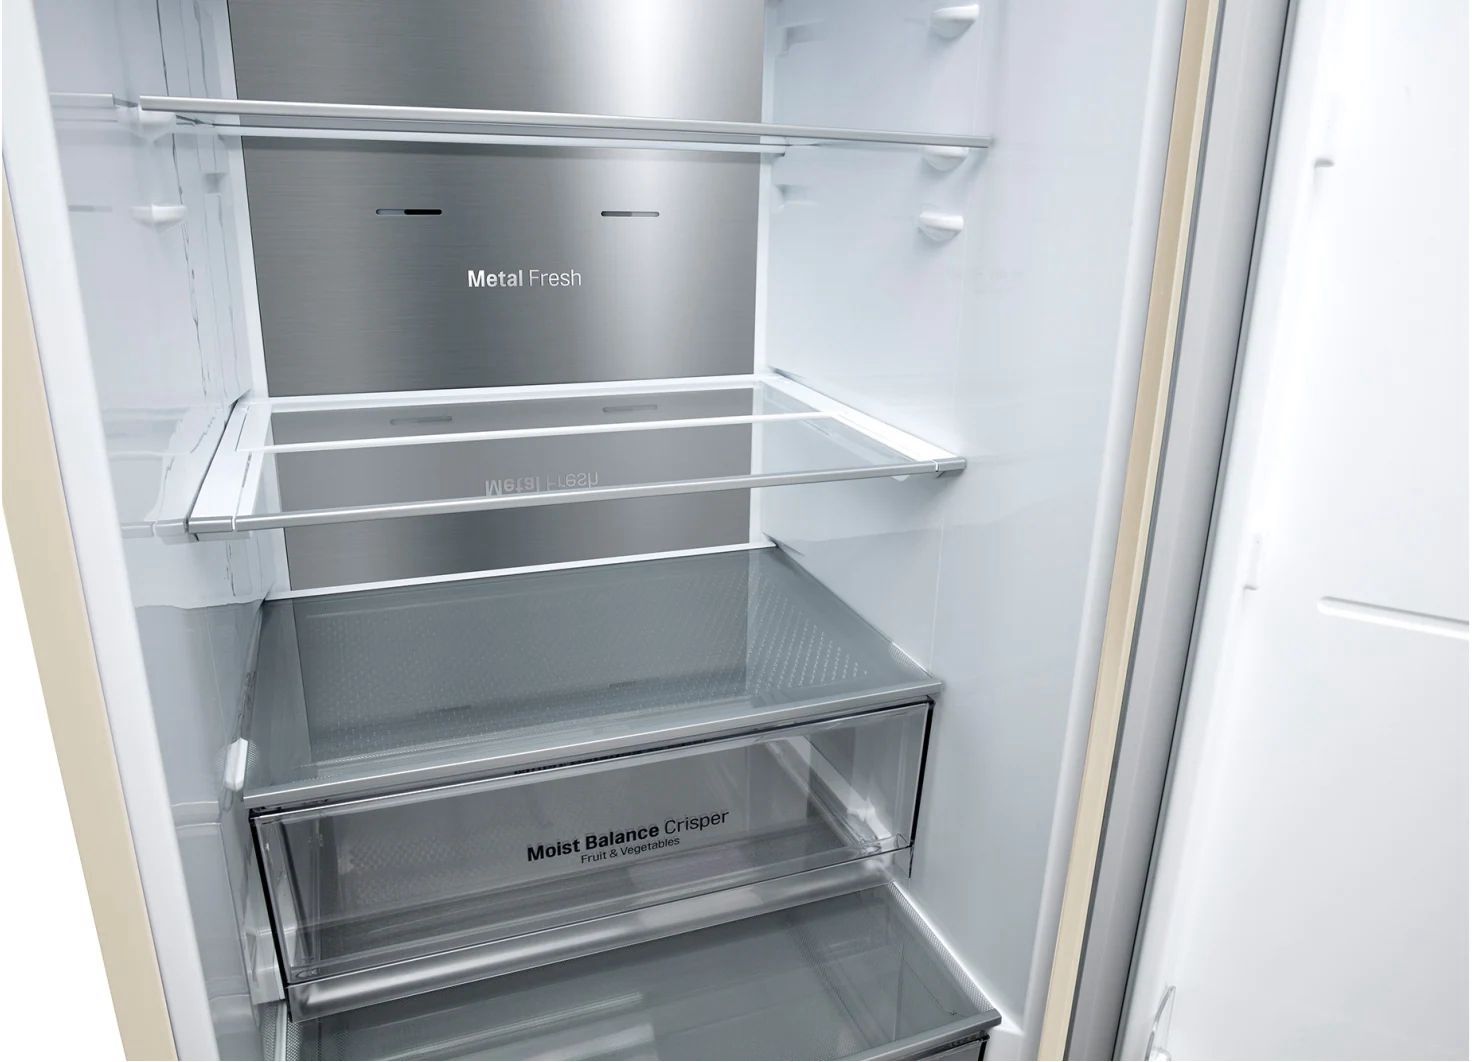 холодильник lg ga-b459meqm, купить в Красноярске холодильник lg ga-b459meqm,  купить в Красноярске дешево холодильник lg ga-b459meqm, купить в Красноярске минимальной цене холодильник lg ga-b459meqm